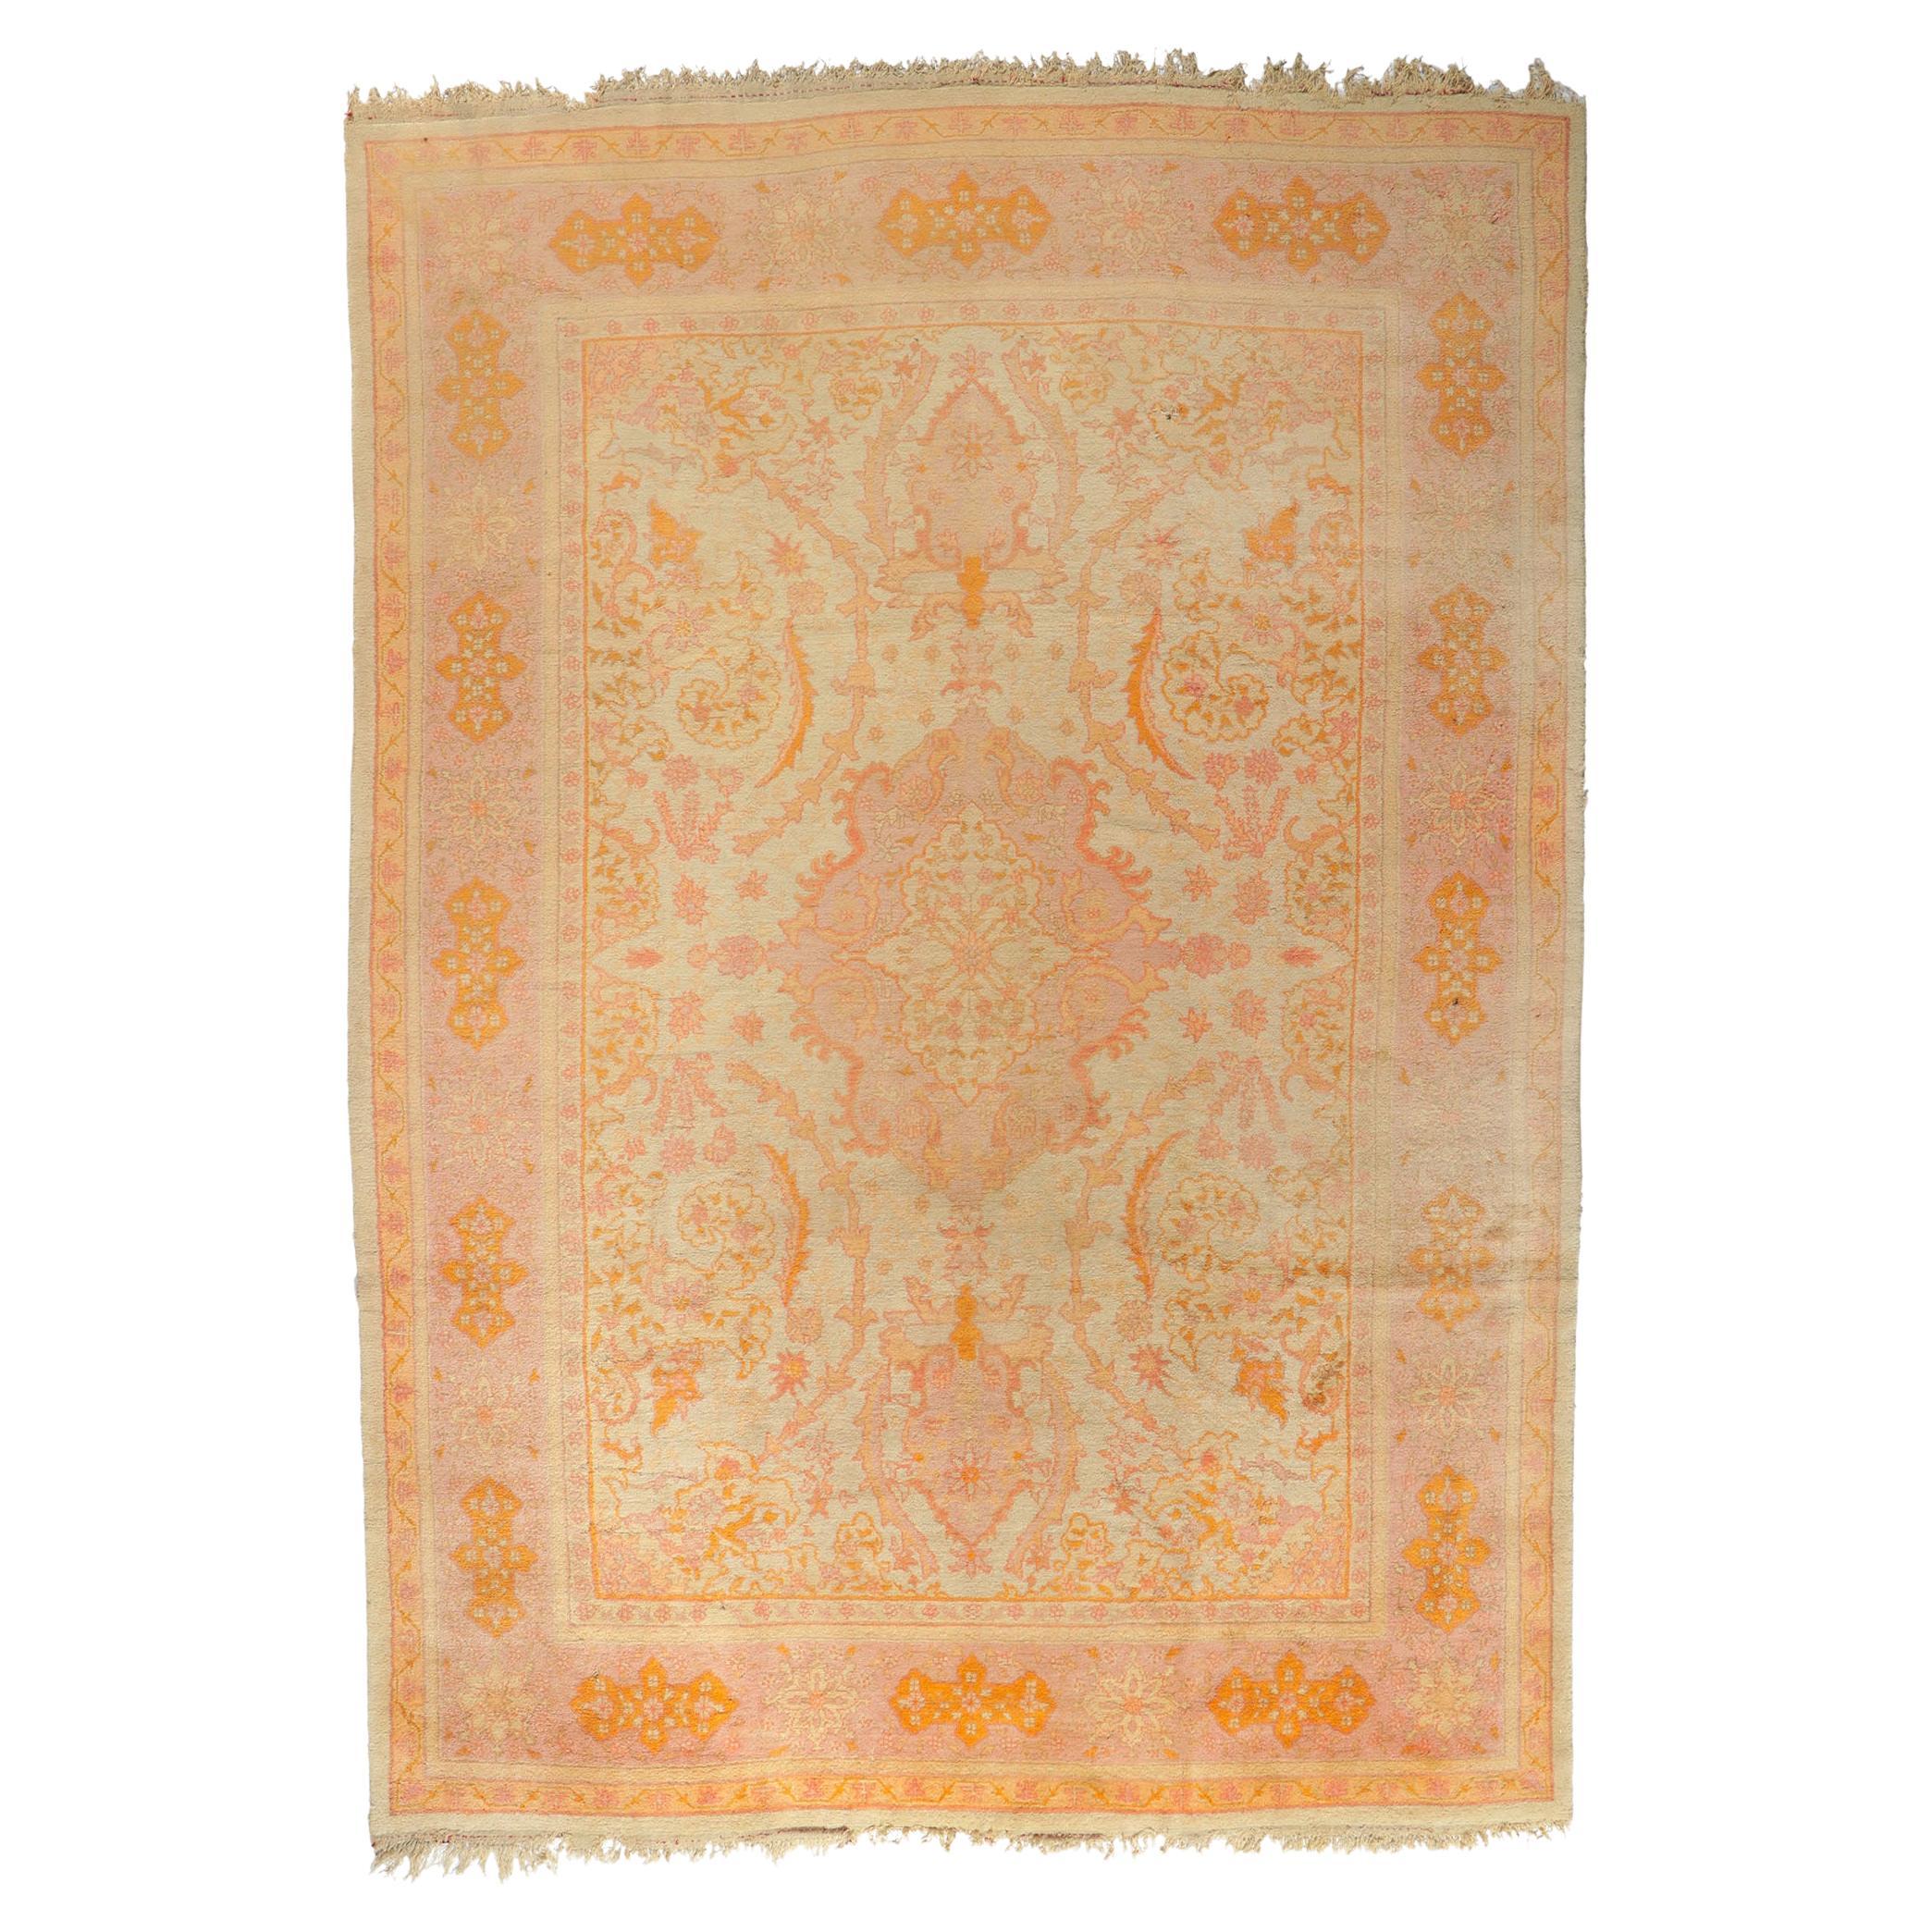 Antiker türkischer Oushak-Teppich des späten 19. Jahrhunderts mit weichen Farben